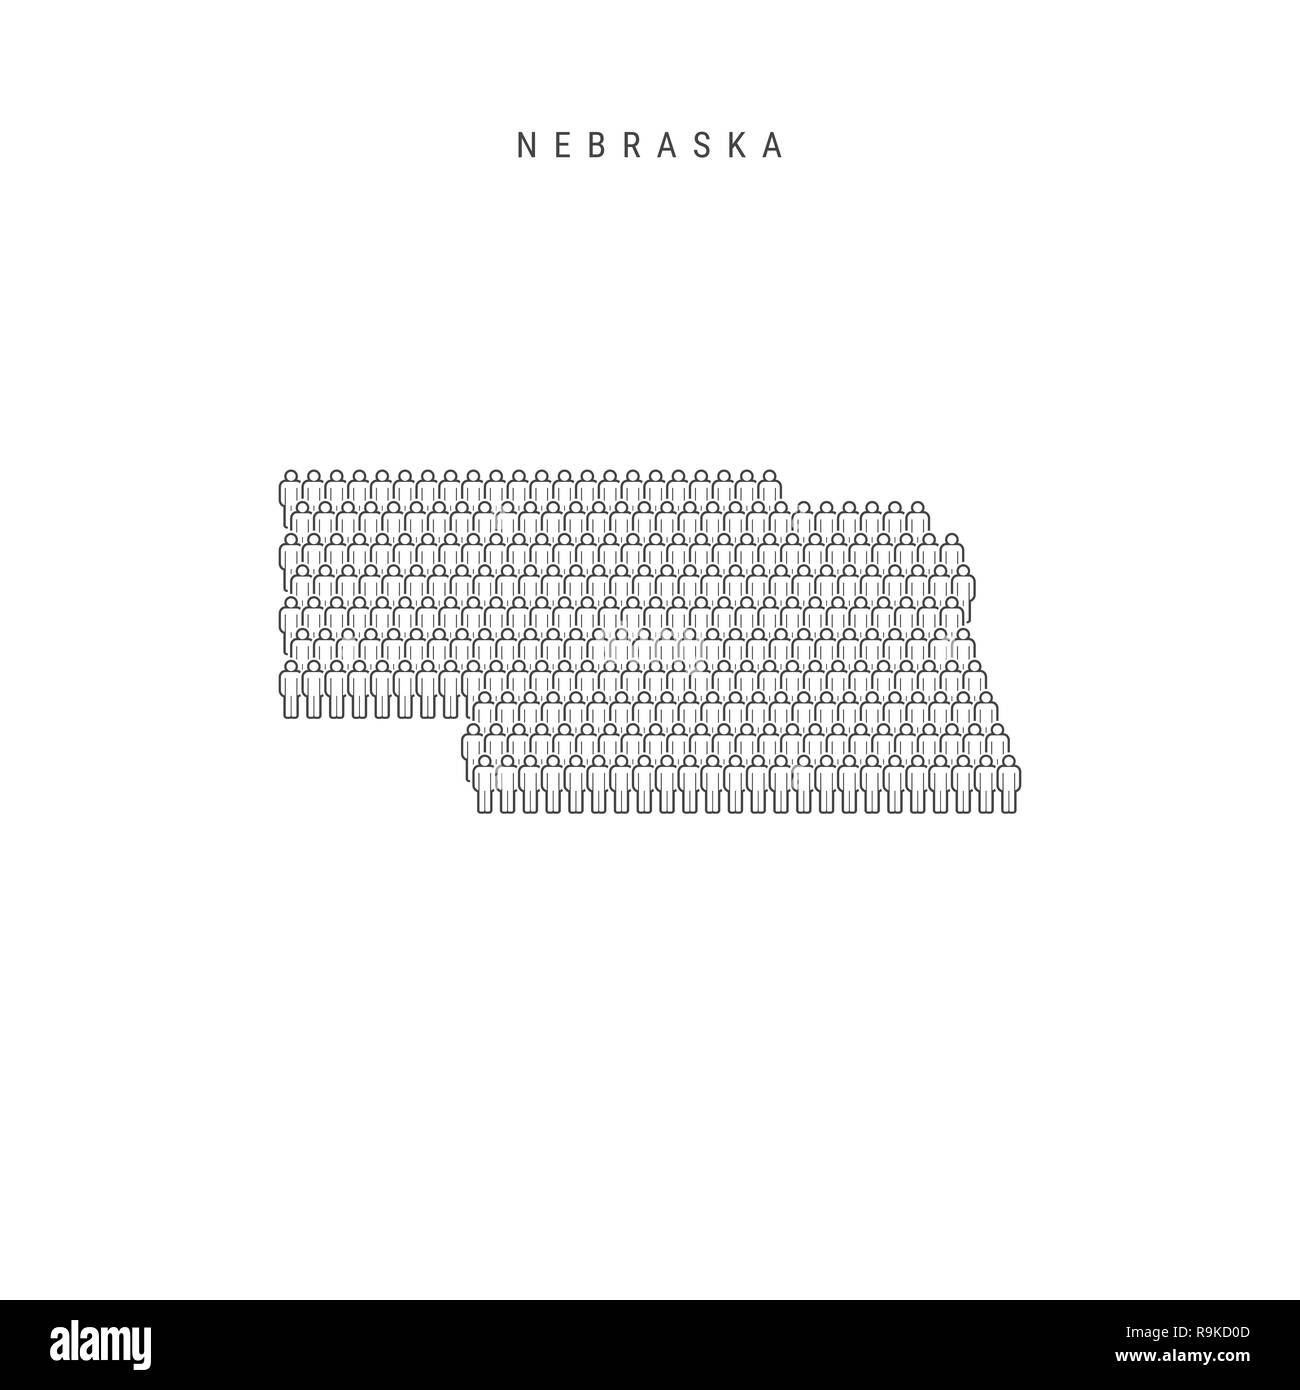 Leute Karte von Nebraska, US-Staat. Stilisierte Silhouette, Leute in der Form einer Karte von Nebraska. Nebraska Bevölkerung. Abbildung isoliert auf W Stockfoto